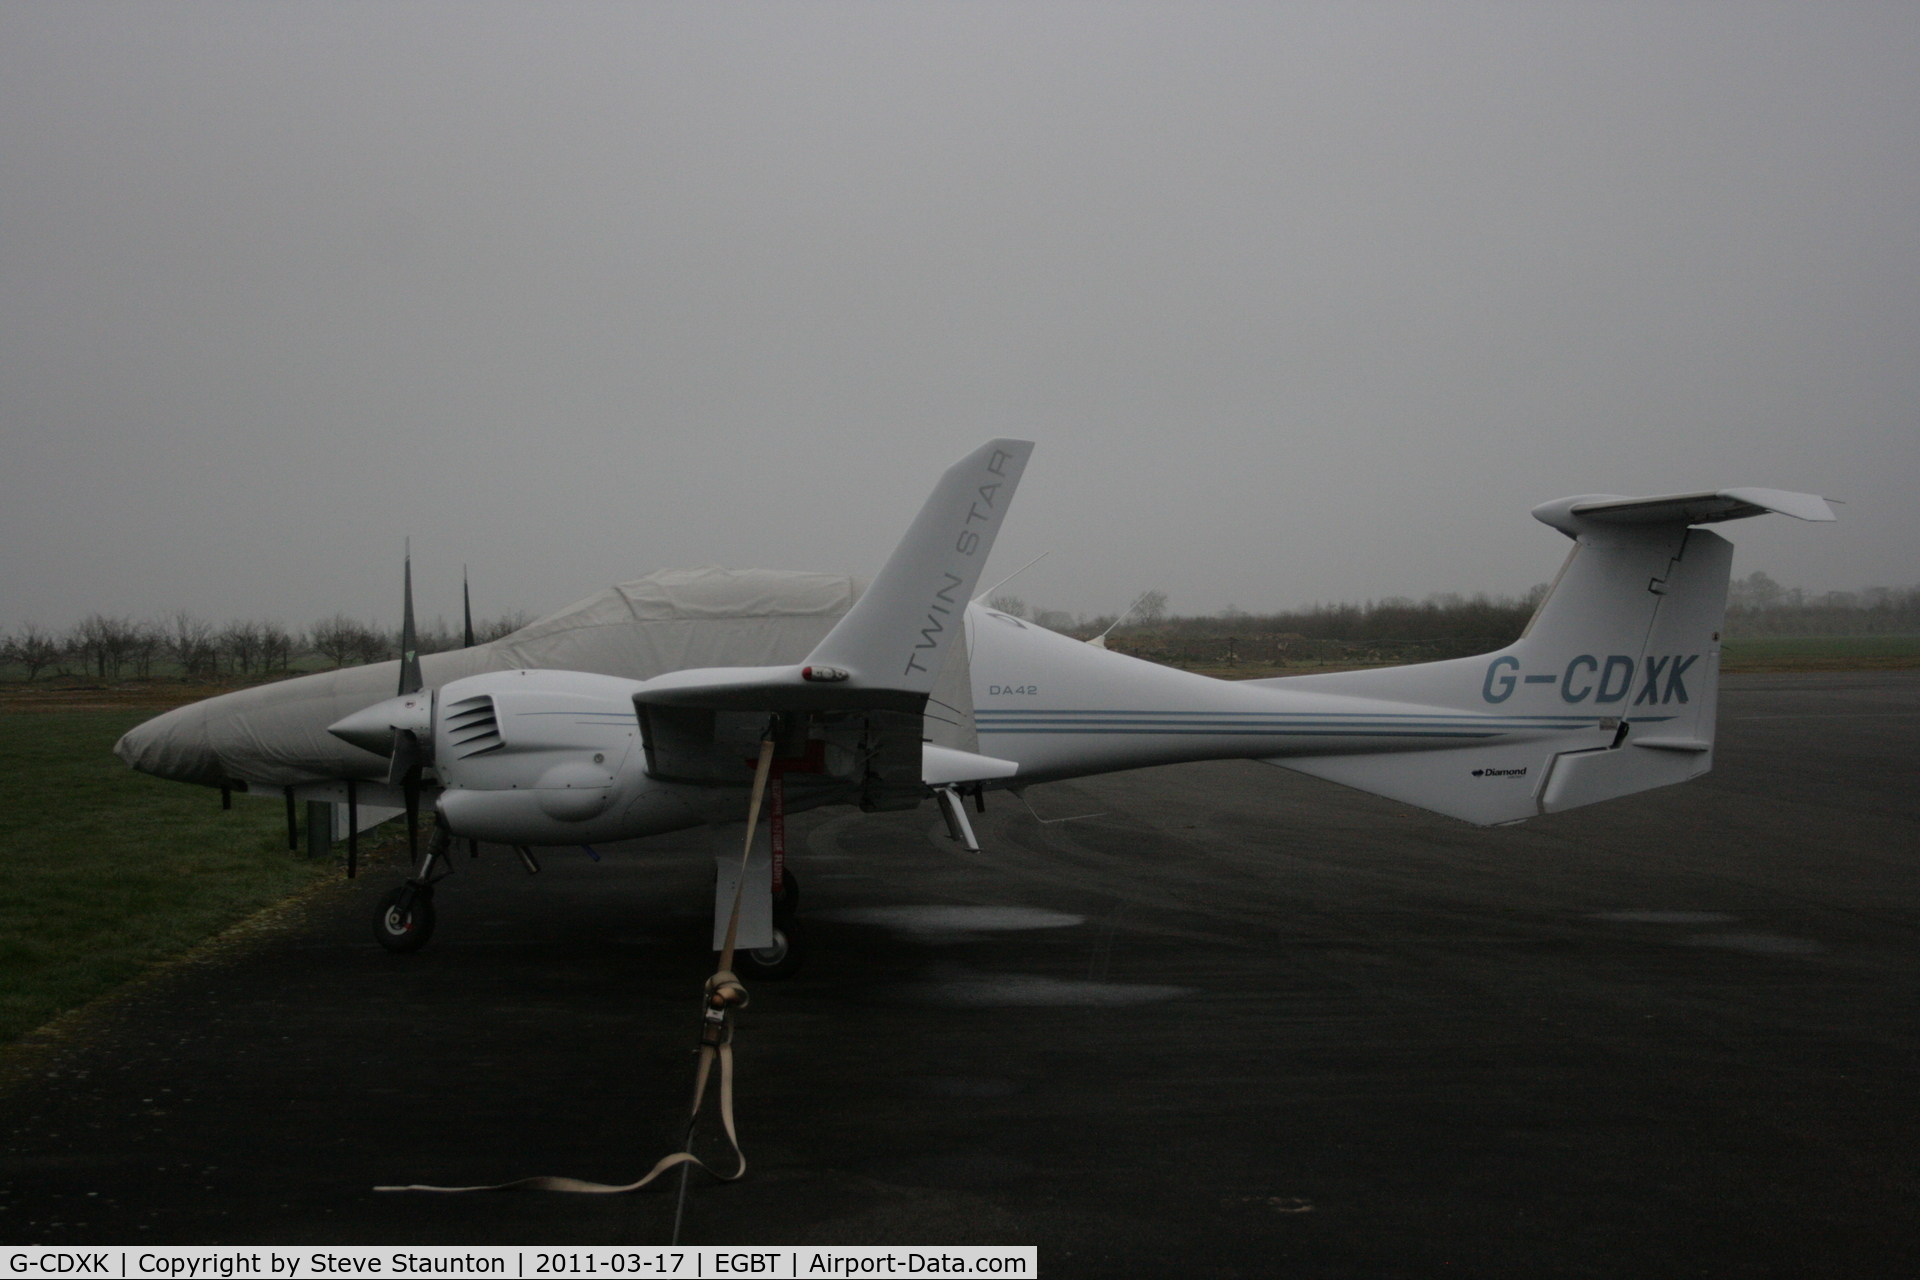 G-CDXK, 2006 Diamond DA-42 Twin Star C/N 42.136, Taken at Turweston Airfield March 2010